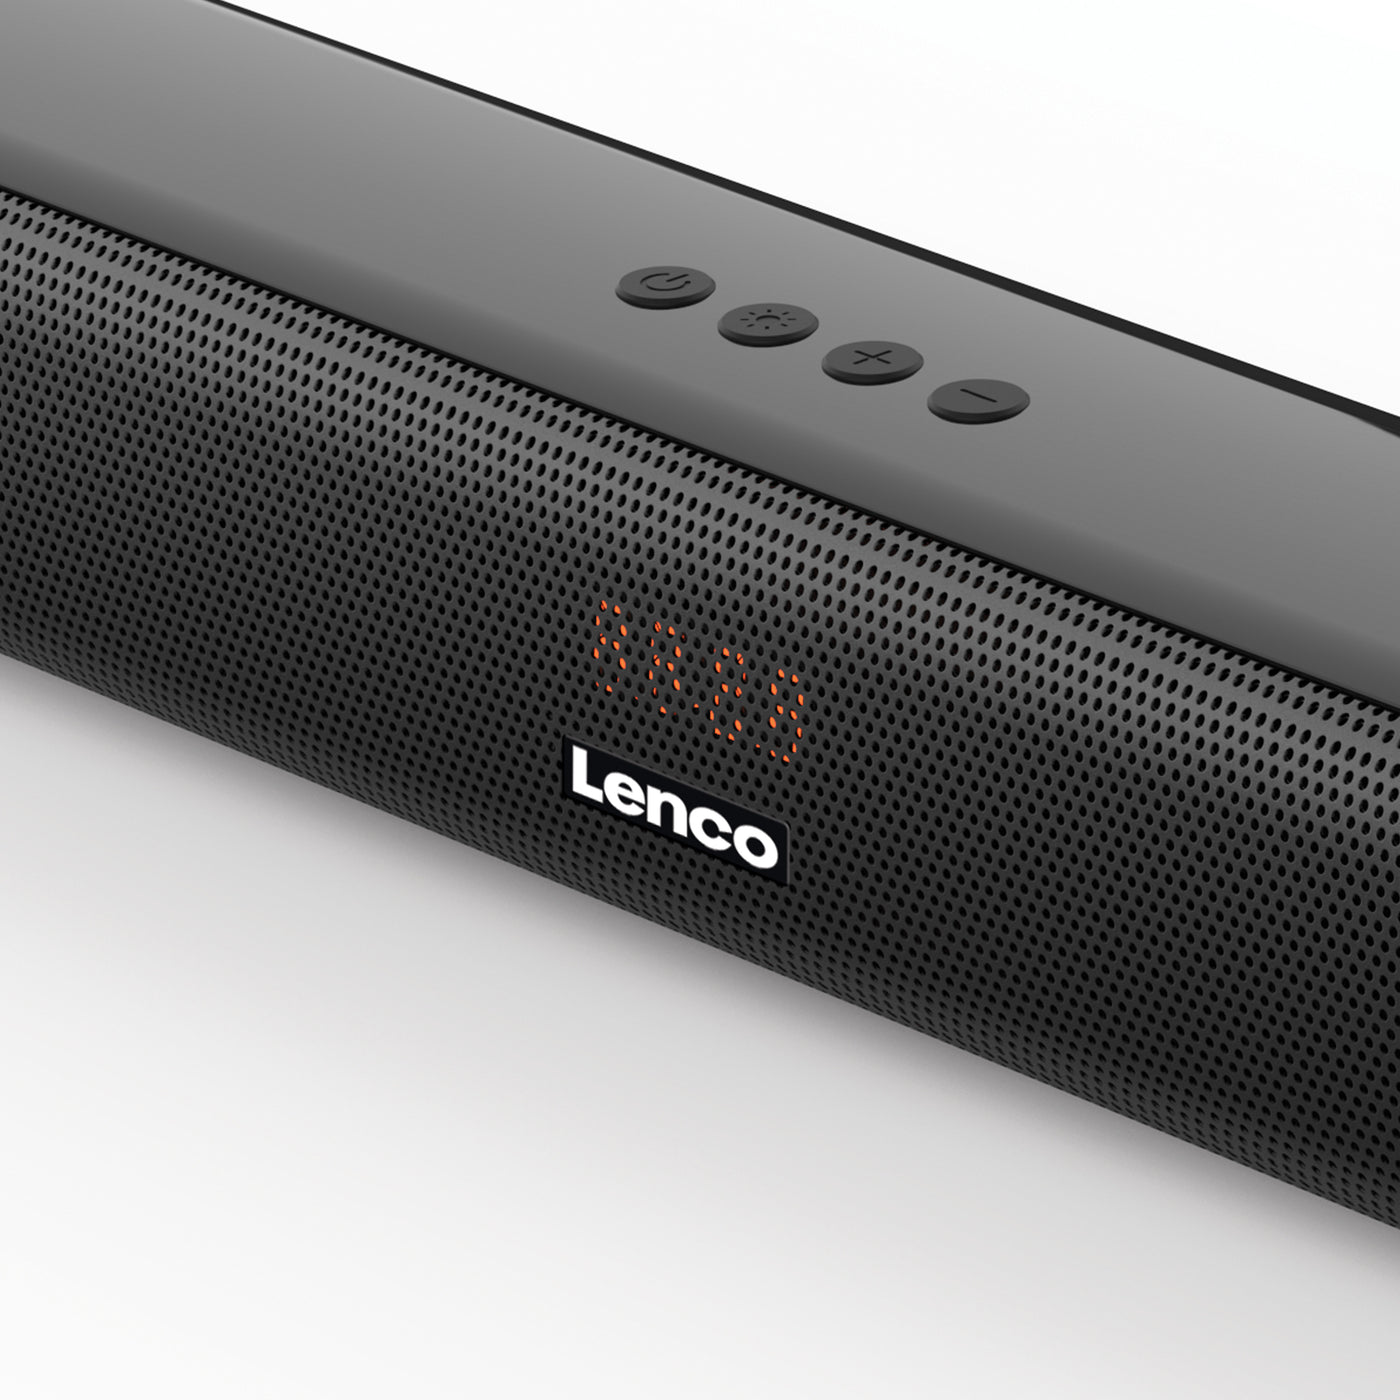 LED Bluetooth® – Lenco-Catalog (ARC) light HDMI -85cm Soundbar SB-042BK with LENCO and